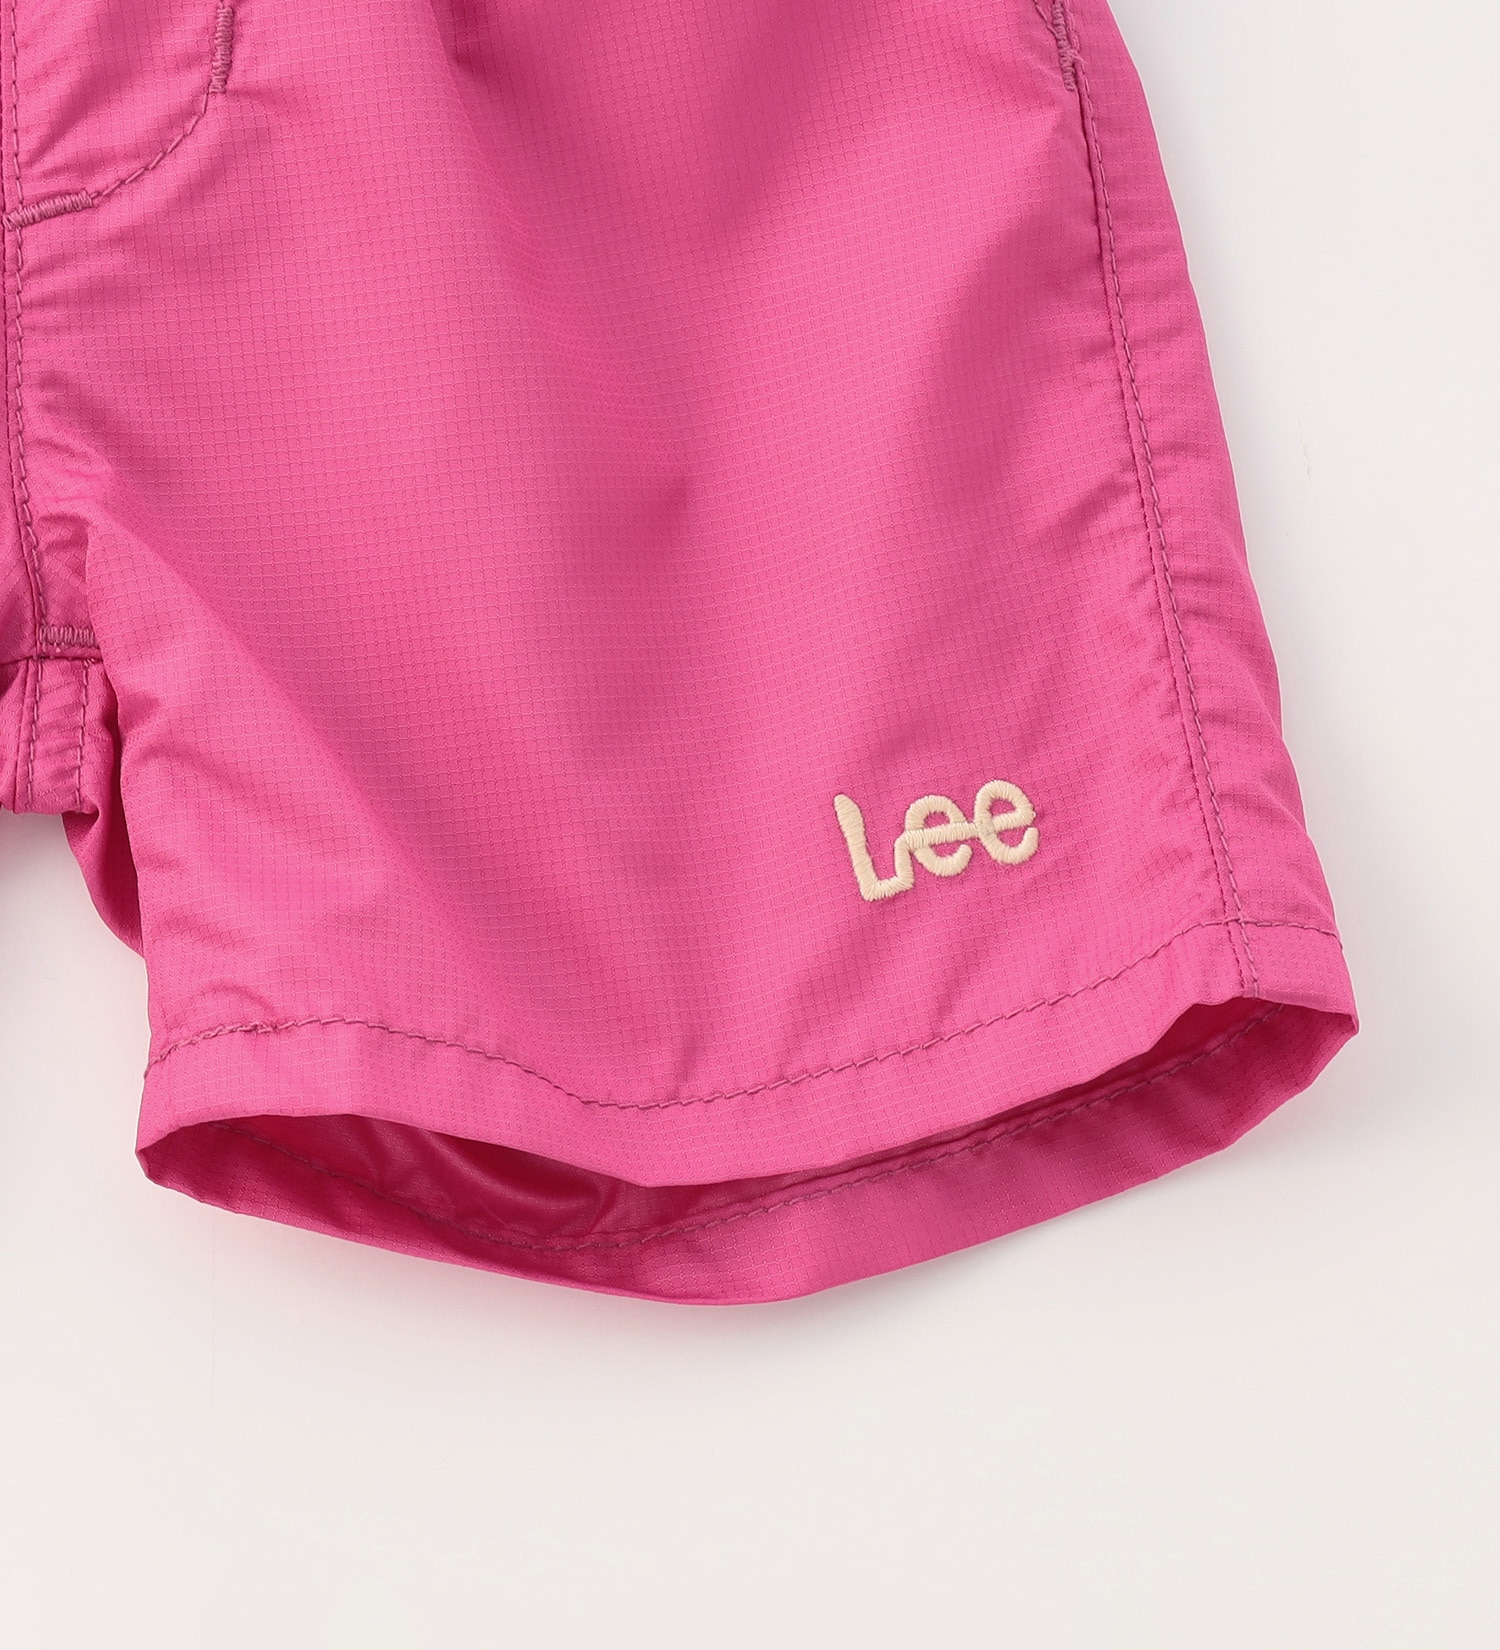 Lee(リー)の【80/90cm】ベビー アスレチックショーツ|パンツ/パンツ/キッズ|ピンク